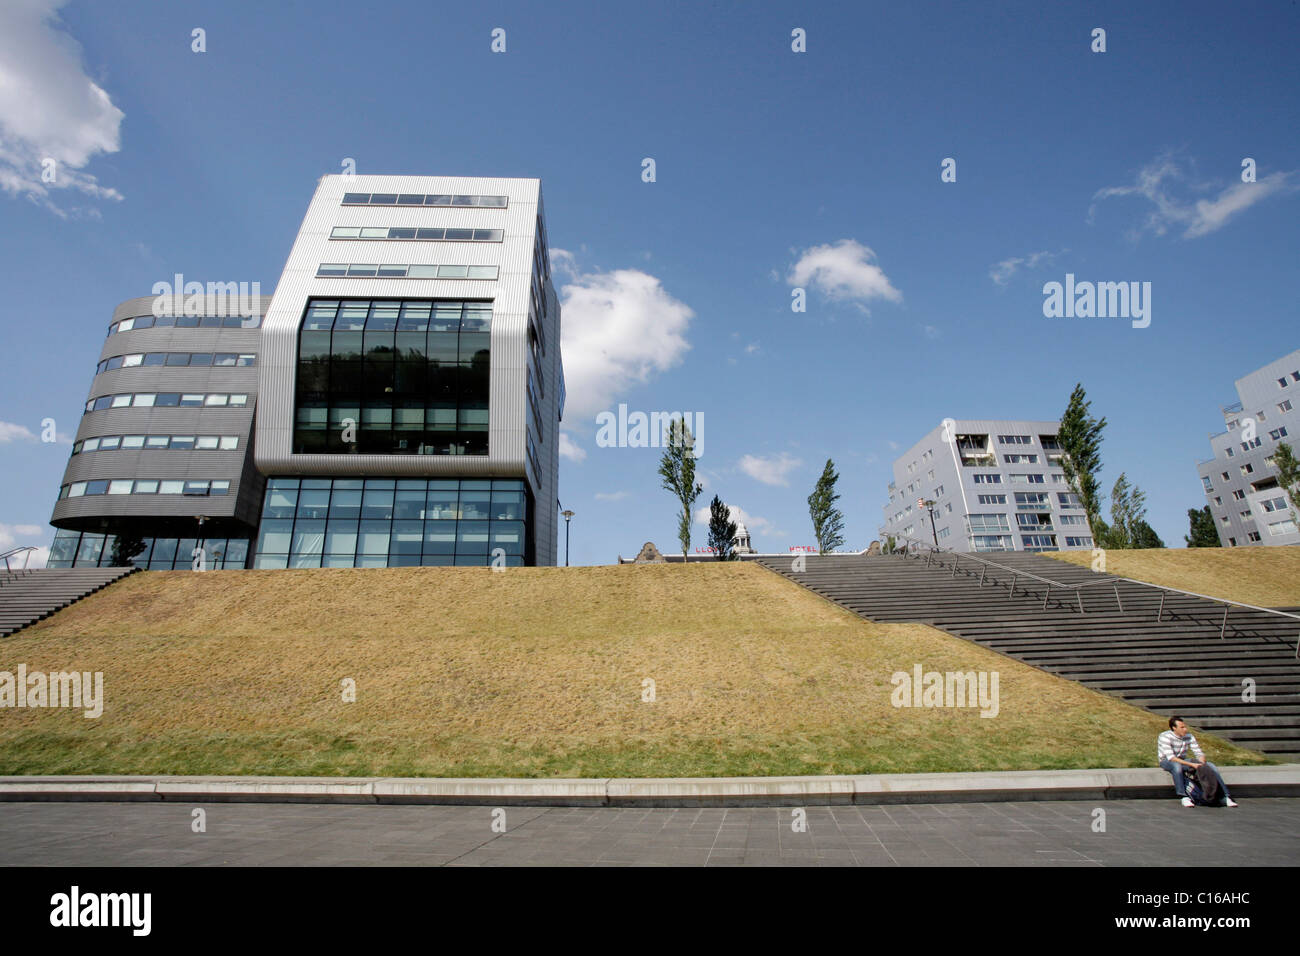 Architecture contemporaine en néerlandais Rietlandpark, Amsterdam, Pays-Bas, Europe Banque D'Images